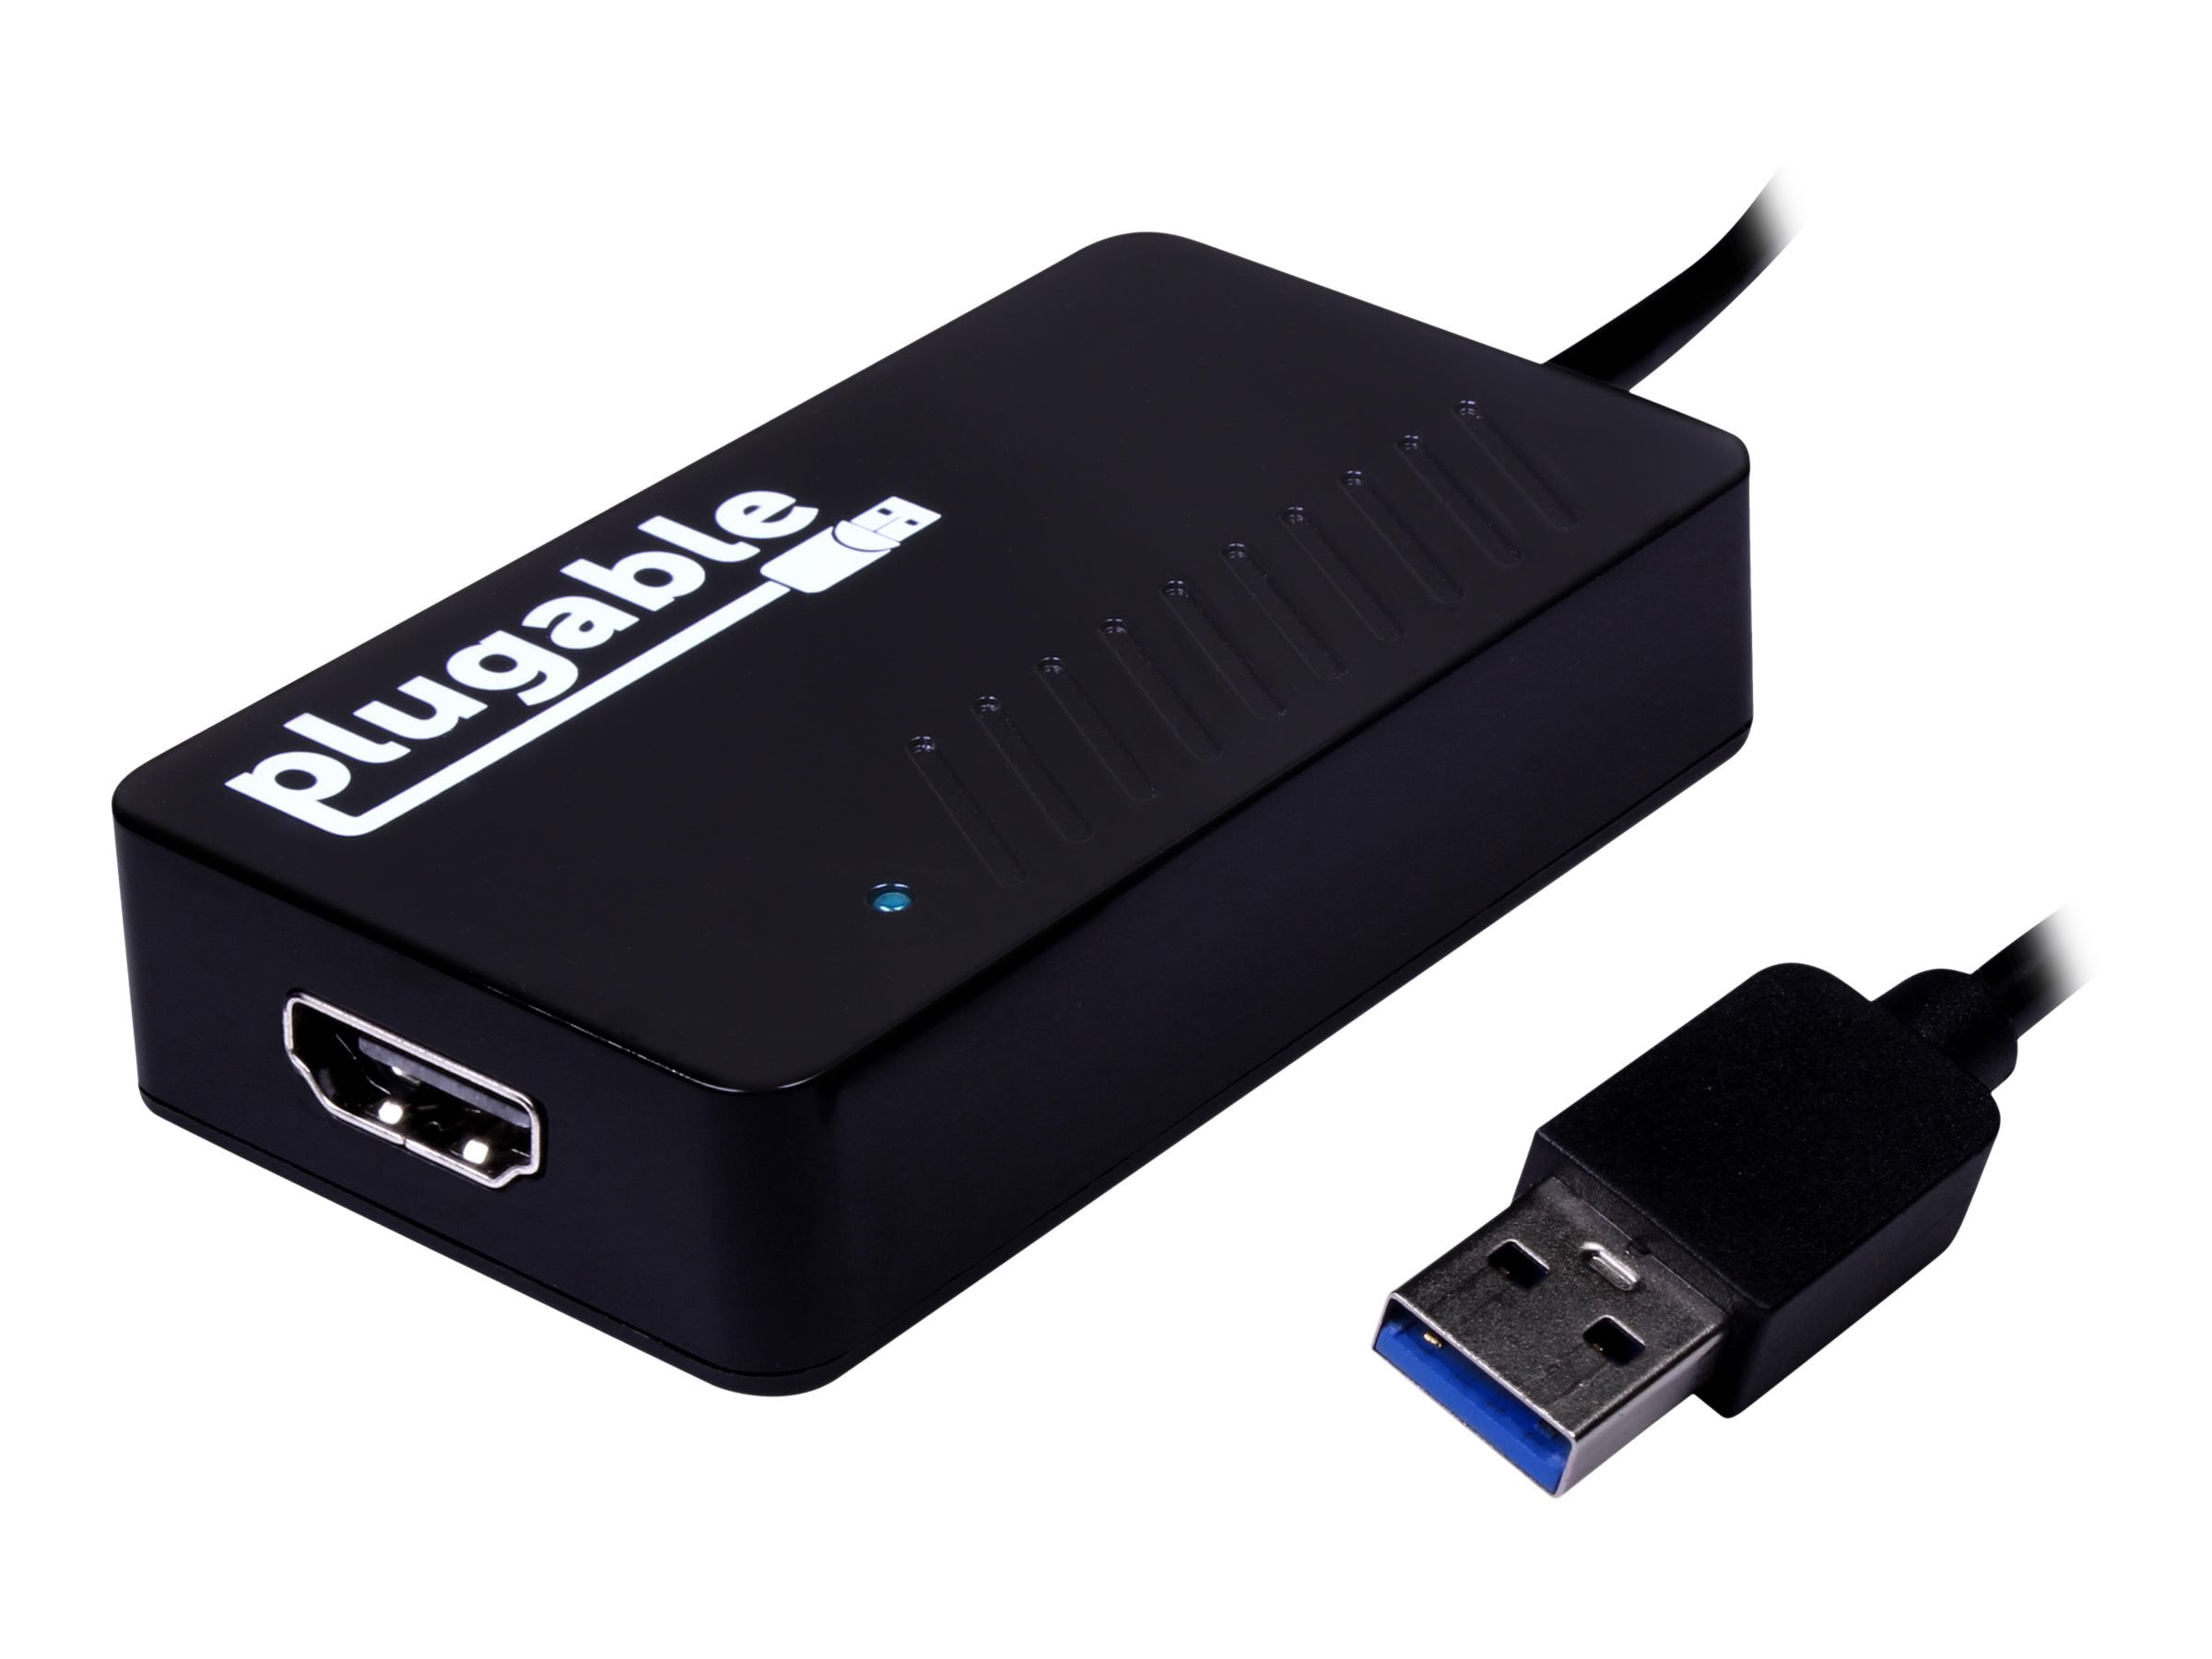 Подключаемый видеоадаптер USB 3.0-HDMI со звуком для нескольких мониторов с разрешением до 2560x1440. Поддержка Windows 11, 10, 8.1, 7, XP и Mac.